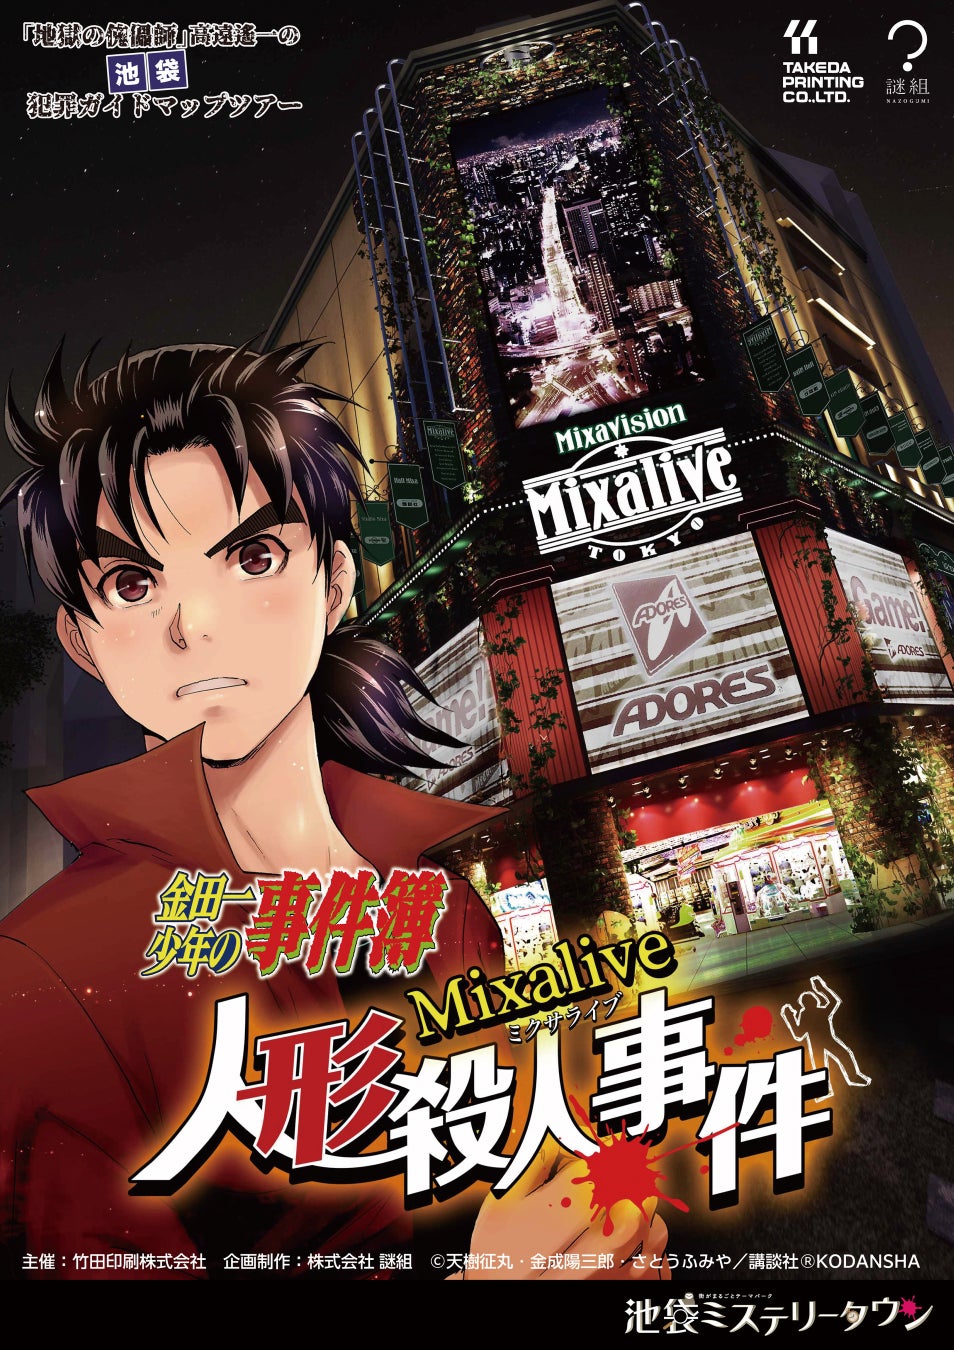 Mixalive TOKYOにて『金田一少年の事件簿』とコラボしたアトラクション第２弾「ミクサライブ人形殺人事件」が9月29日(金)から開催されます。